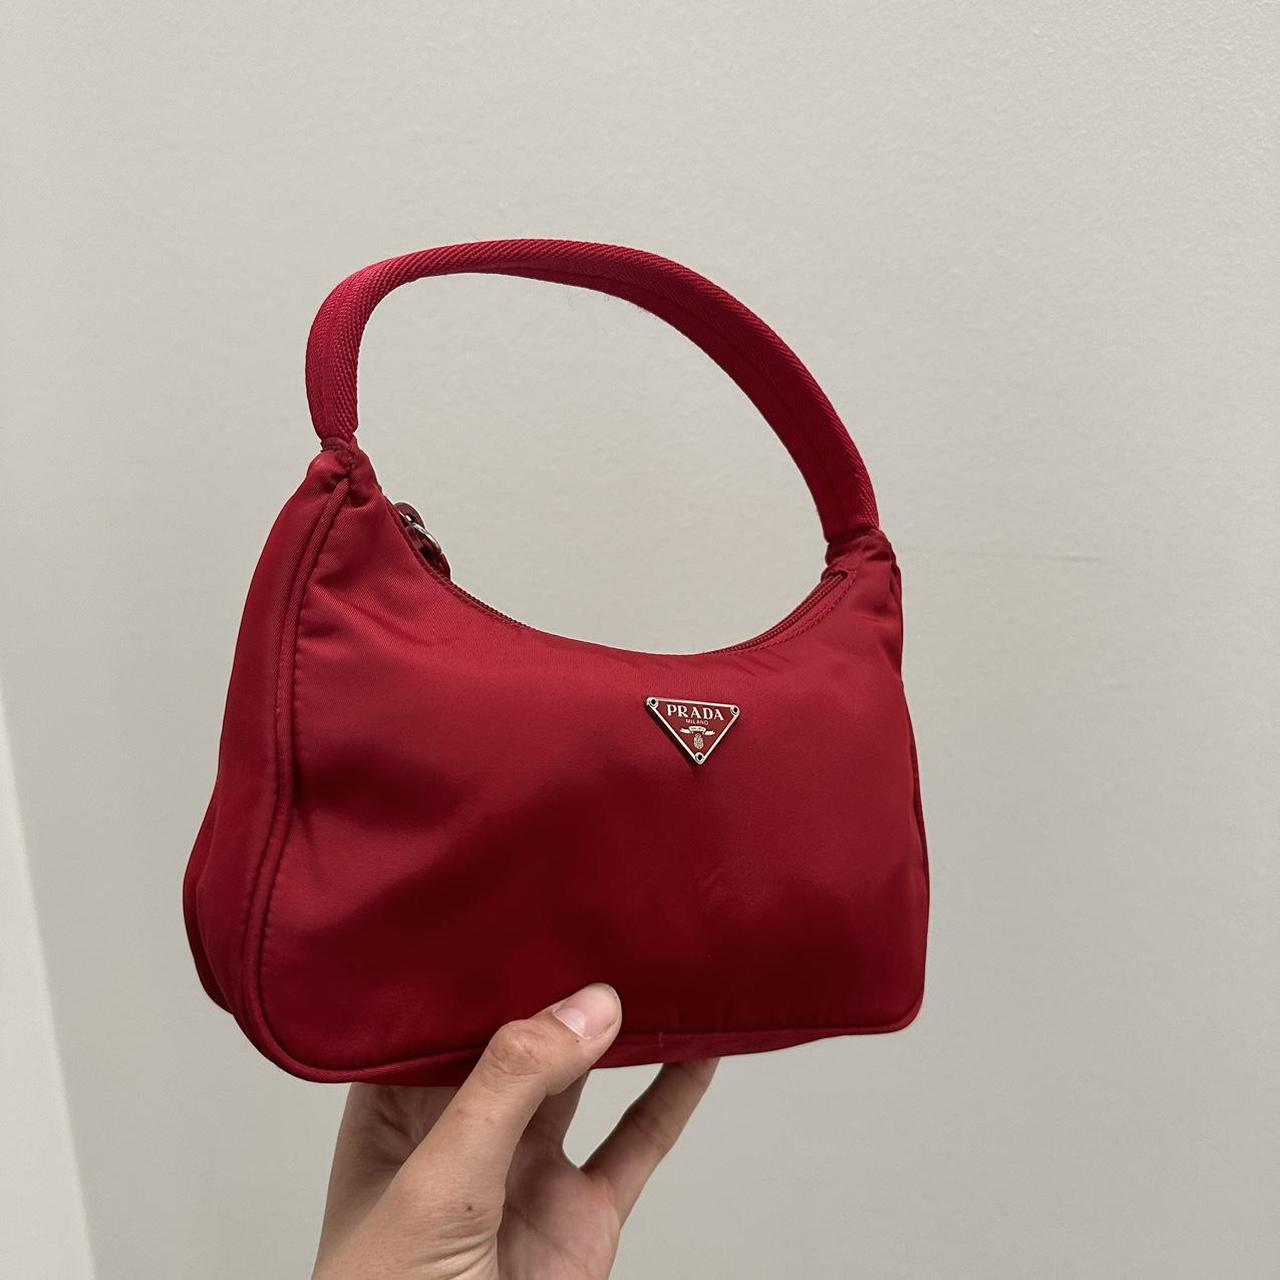 Prada Hobo Shoulder Bag Red Must have piece! ️ ️... - Depop